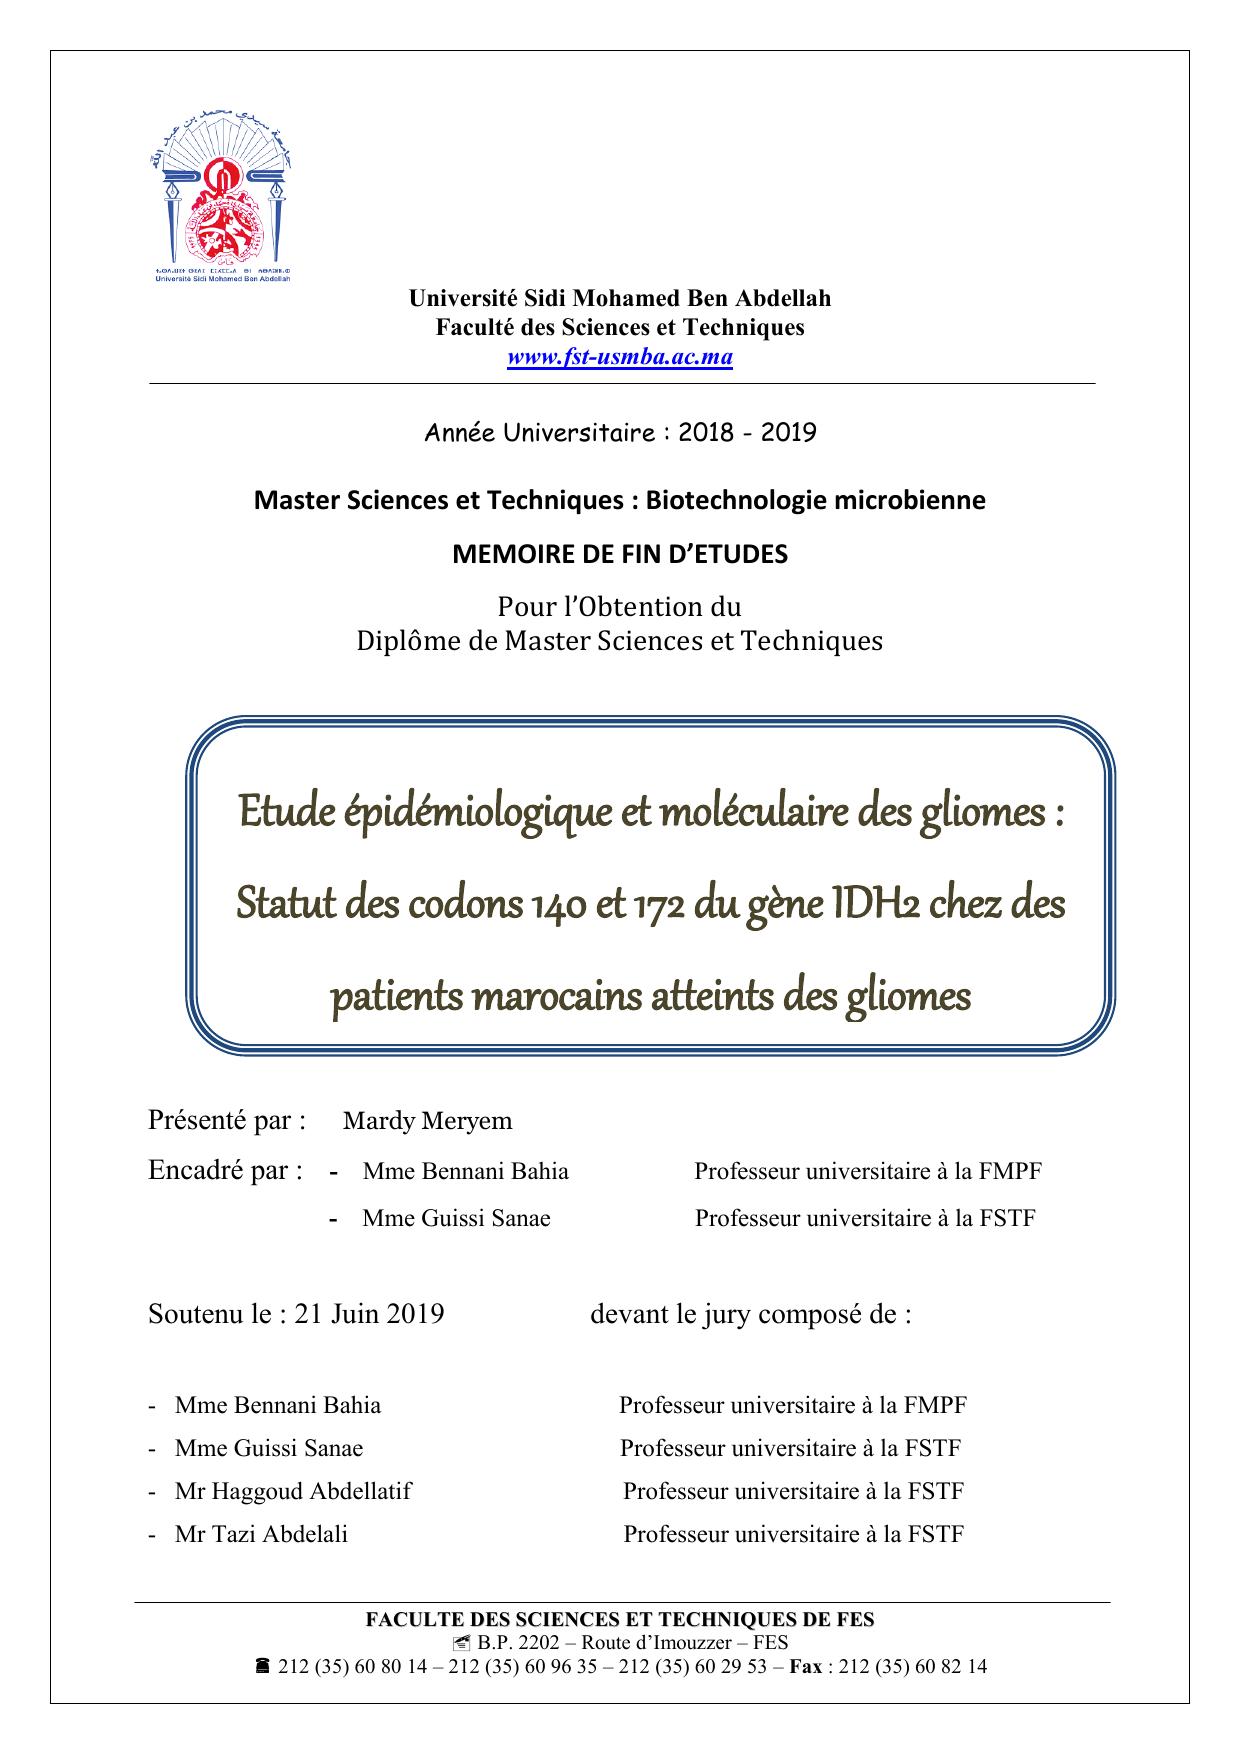 Etude épidémiologique et moléculaire des gliomes : Statut des codons 140 et 172 du gène IDH2 chez des patients marocains atteints des gliomes